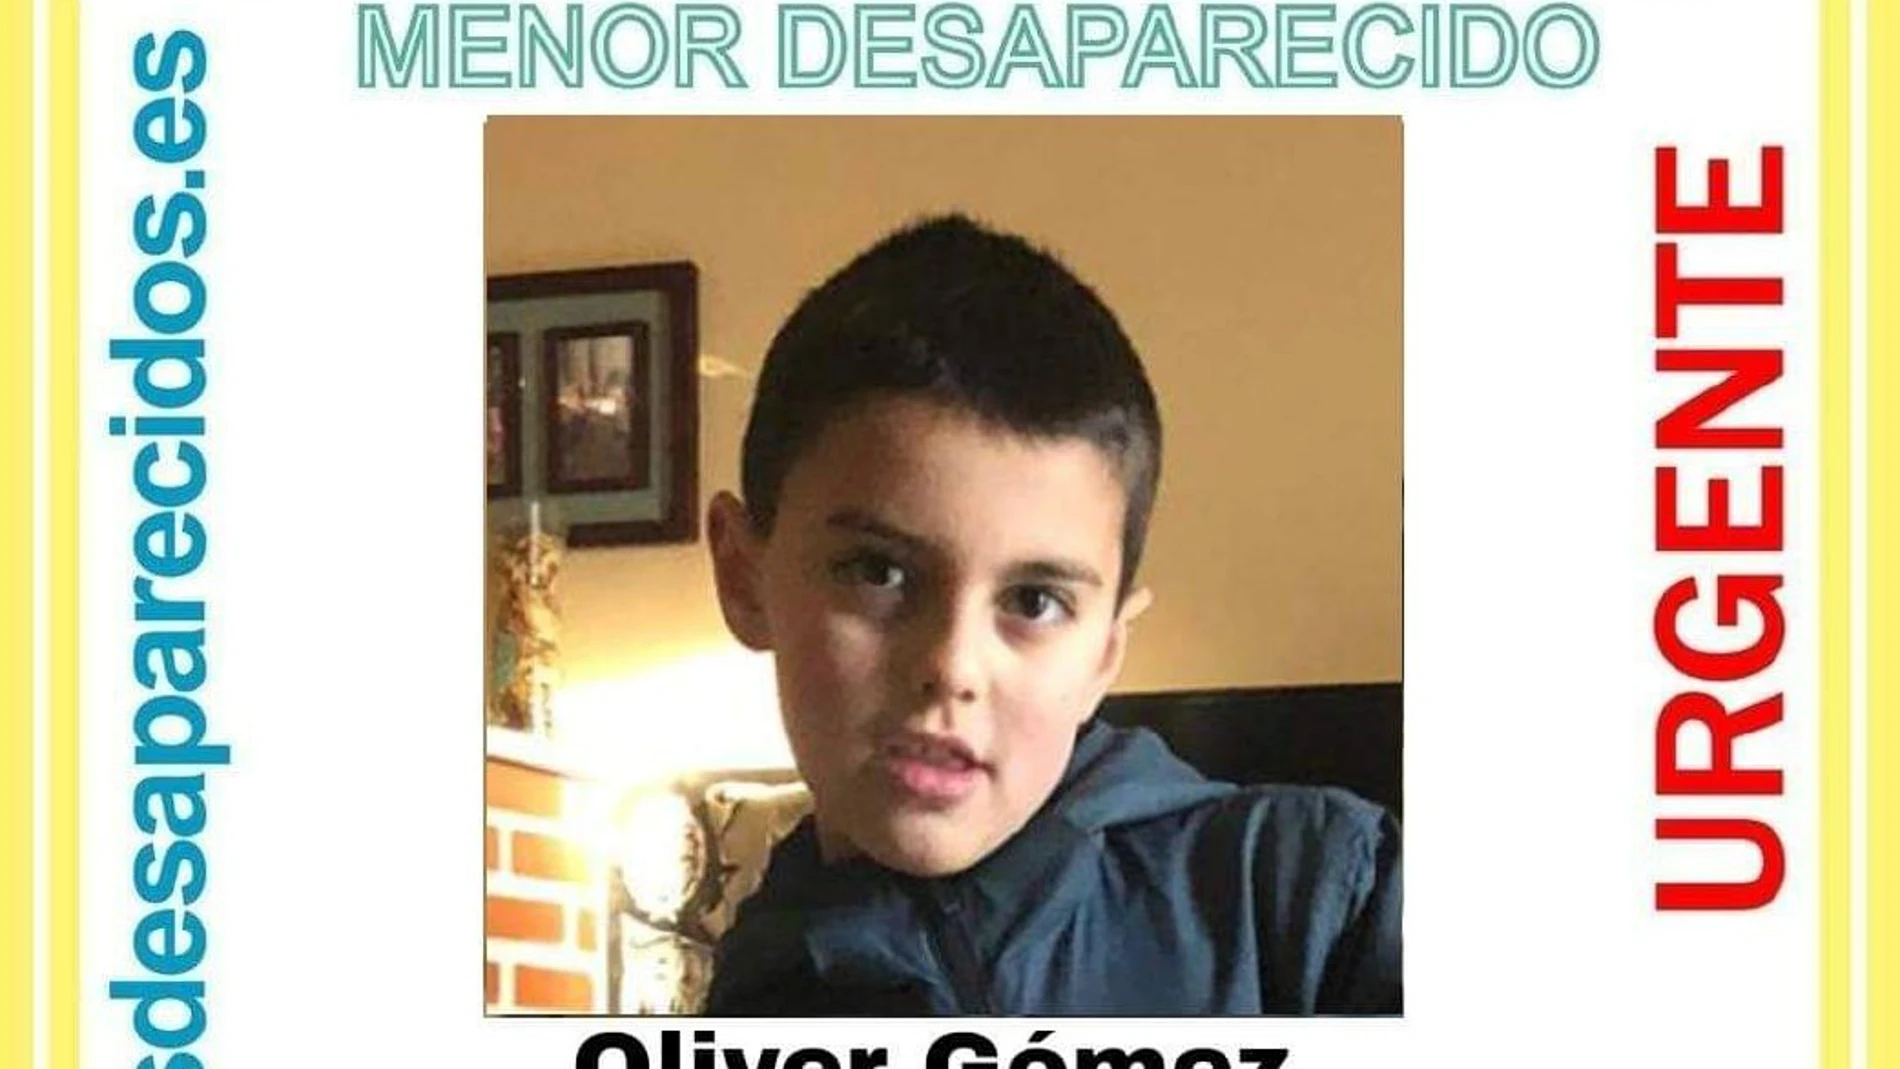 SOS Desaparecidos ha difundido la imagen del menor para que se le pueda localizar.